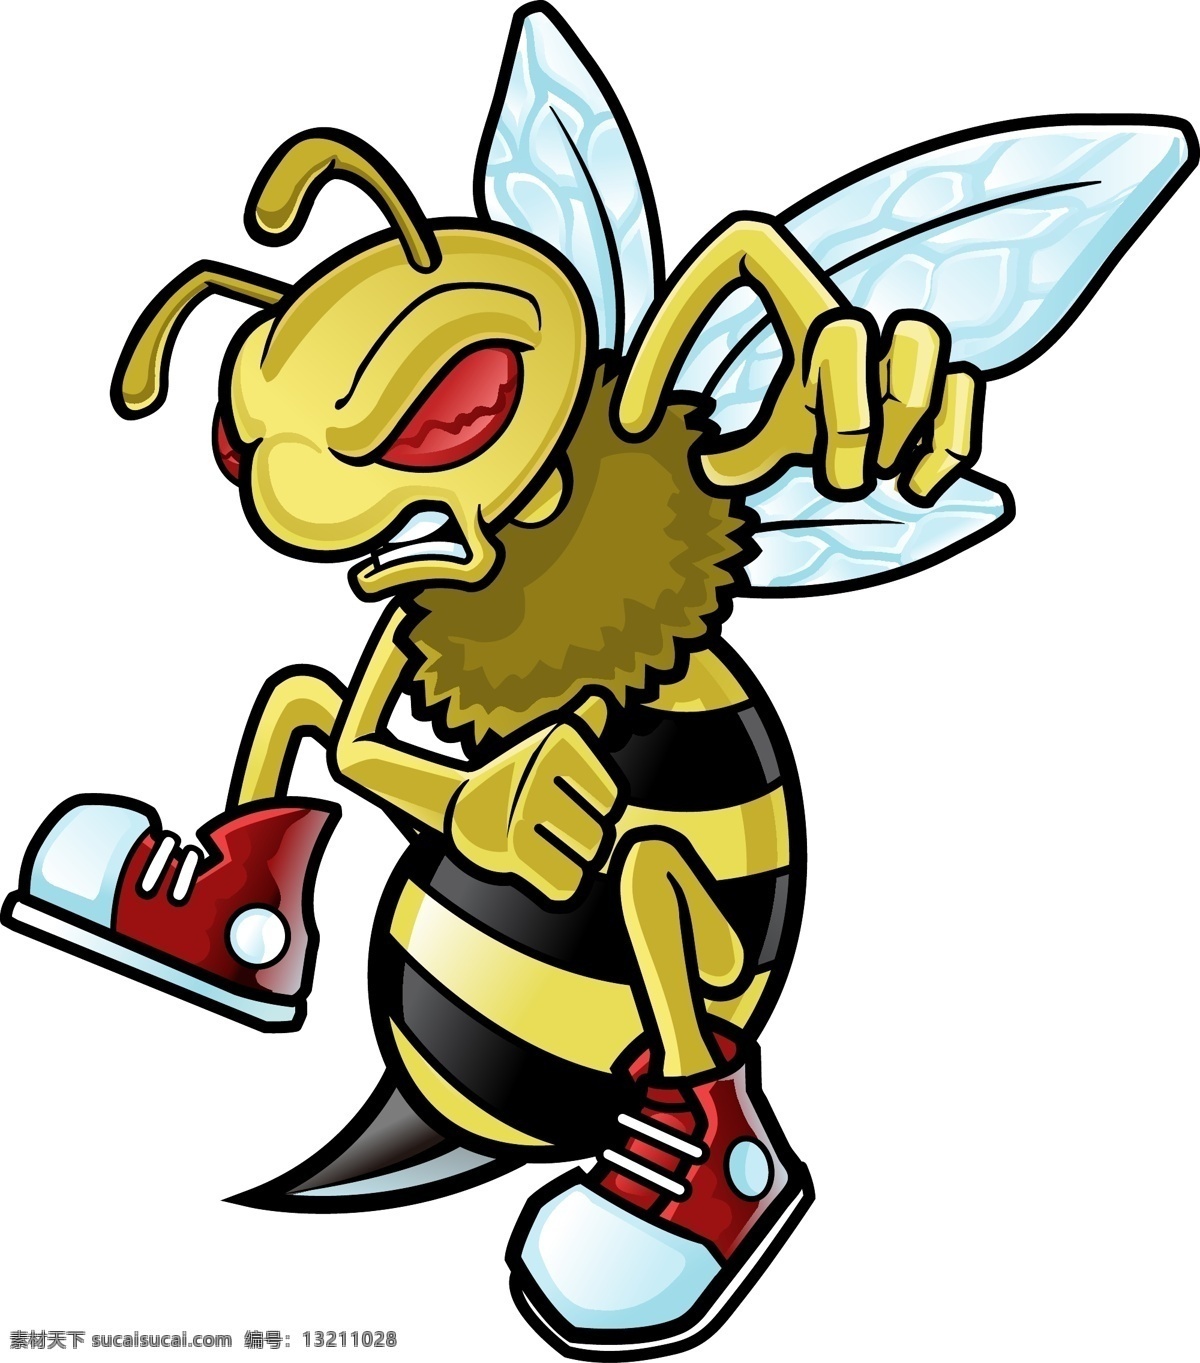 矢量蜜蜂 卡通蜜蜂 手绘蜜蜂 蜜蜂插画 凶悍蜜蜂 可怕蜜蜂 蜜蜂哲人 拟人蜜蜂 蜜蜂角色 动物 生物世界 昆虫